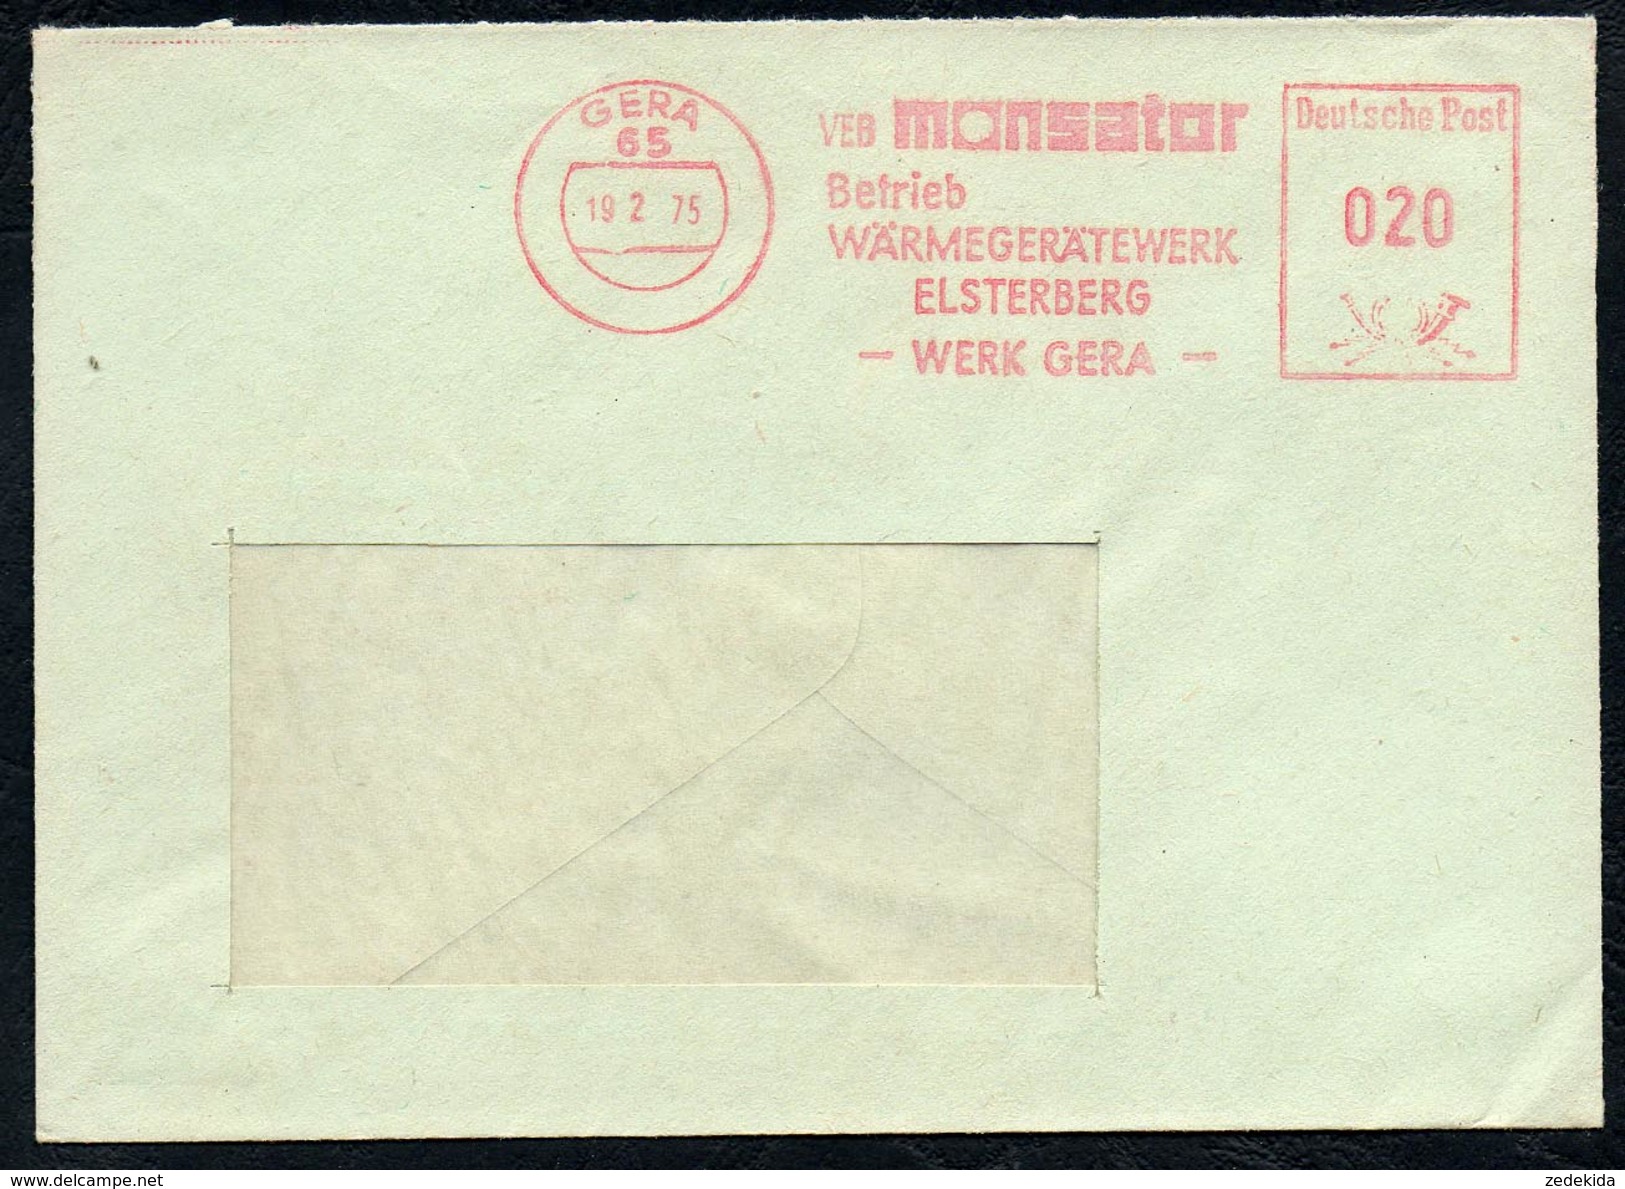 3010 - Alter Beleg - Bedarfspost - Freistempel Freistempler - Gera Monsator Wärmegerätewerk Elsterberg 1975 - Maschinenstempel (EMA)